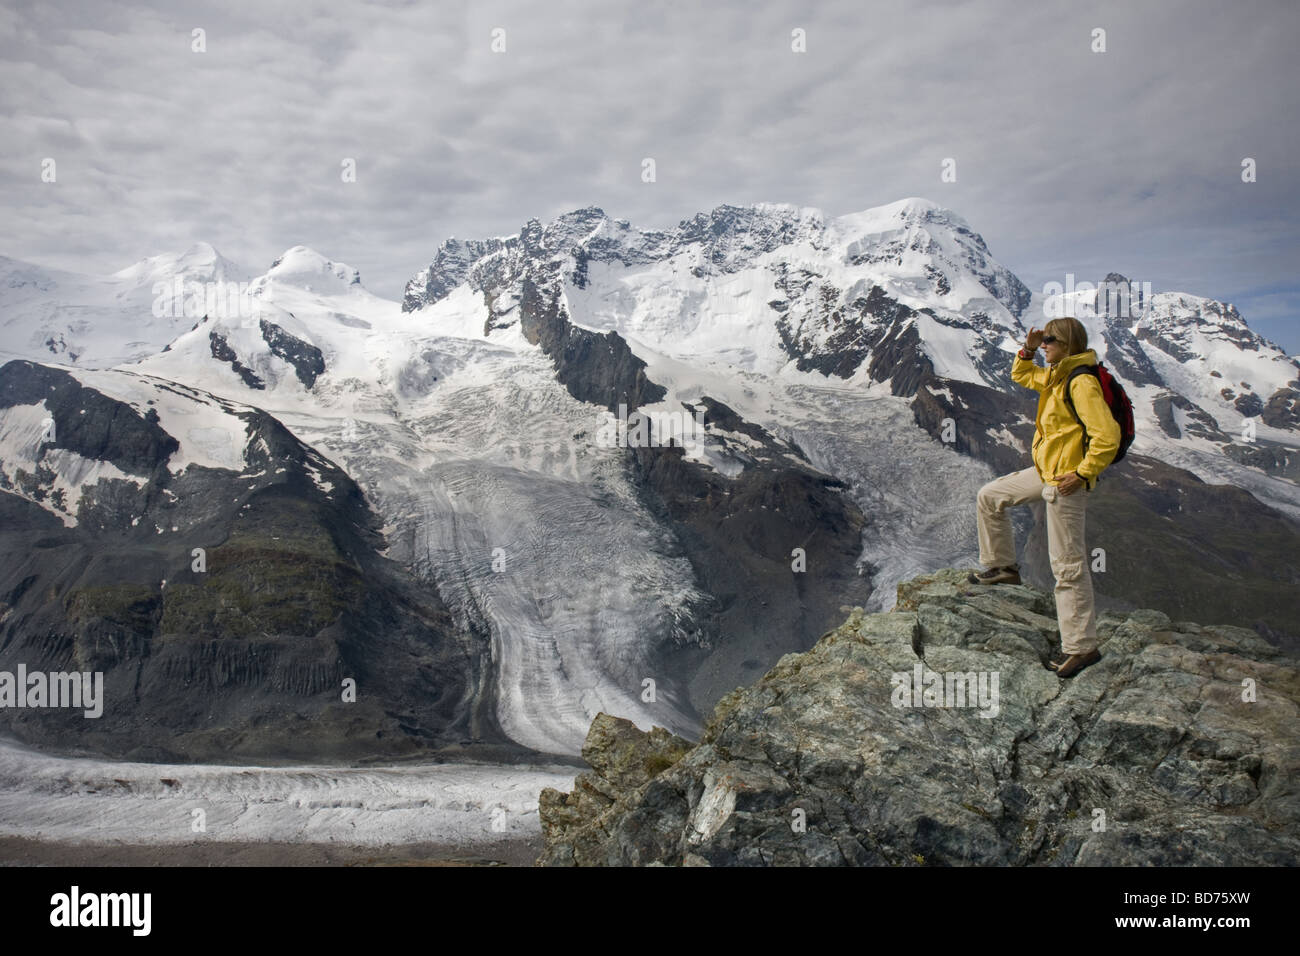 Junge Frau in Gornetgrat Gletscher der Schweiz Stockfoto